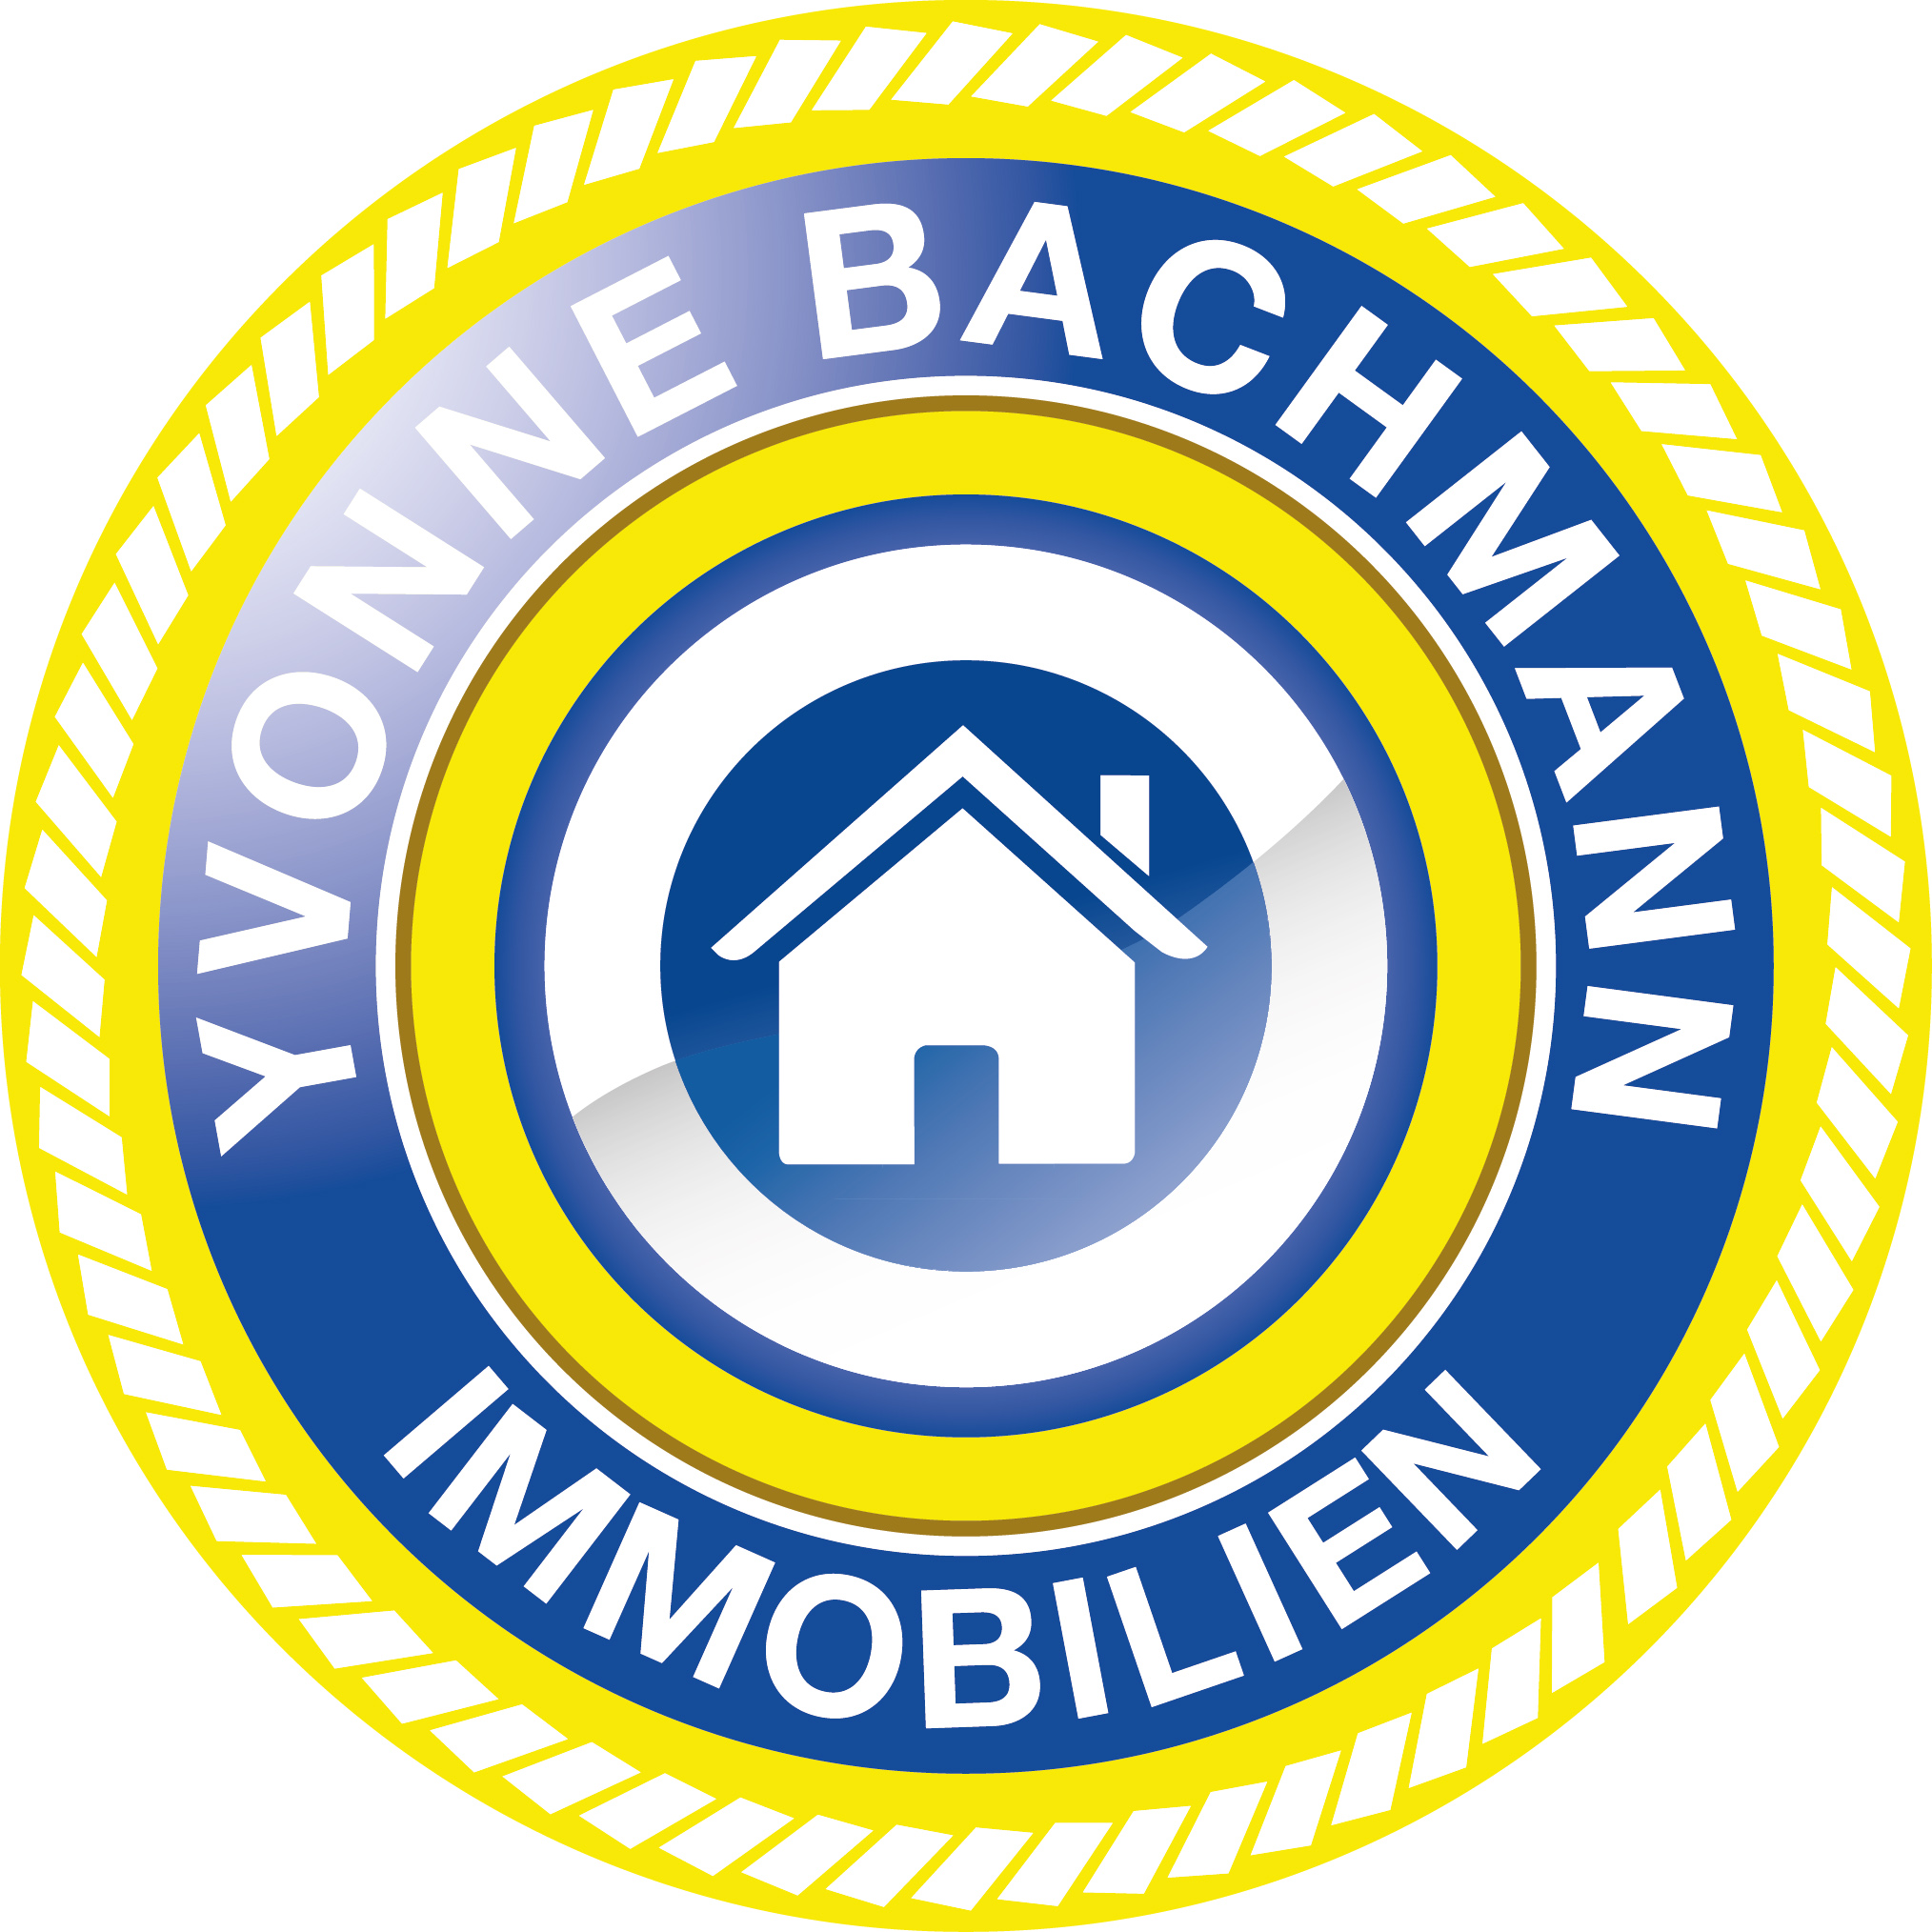 Yvonne Bachmann Immobilien in Berlin